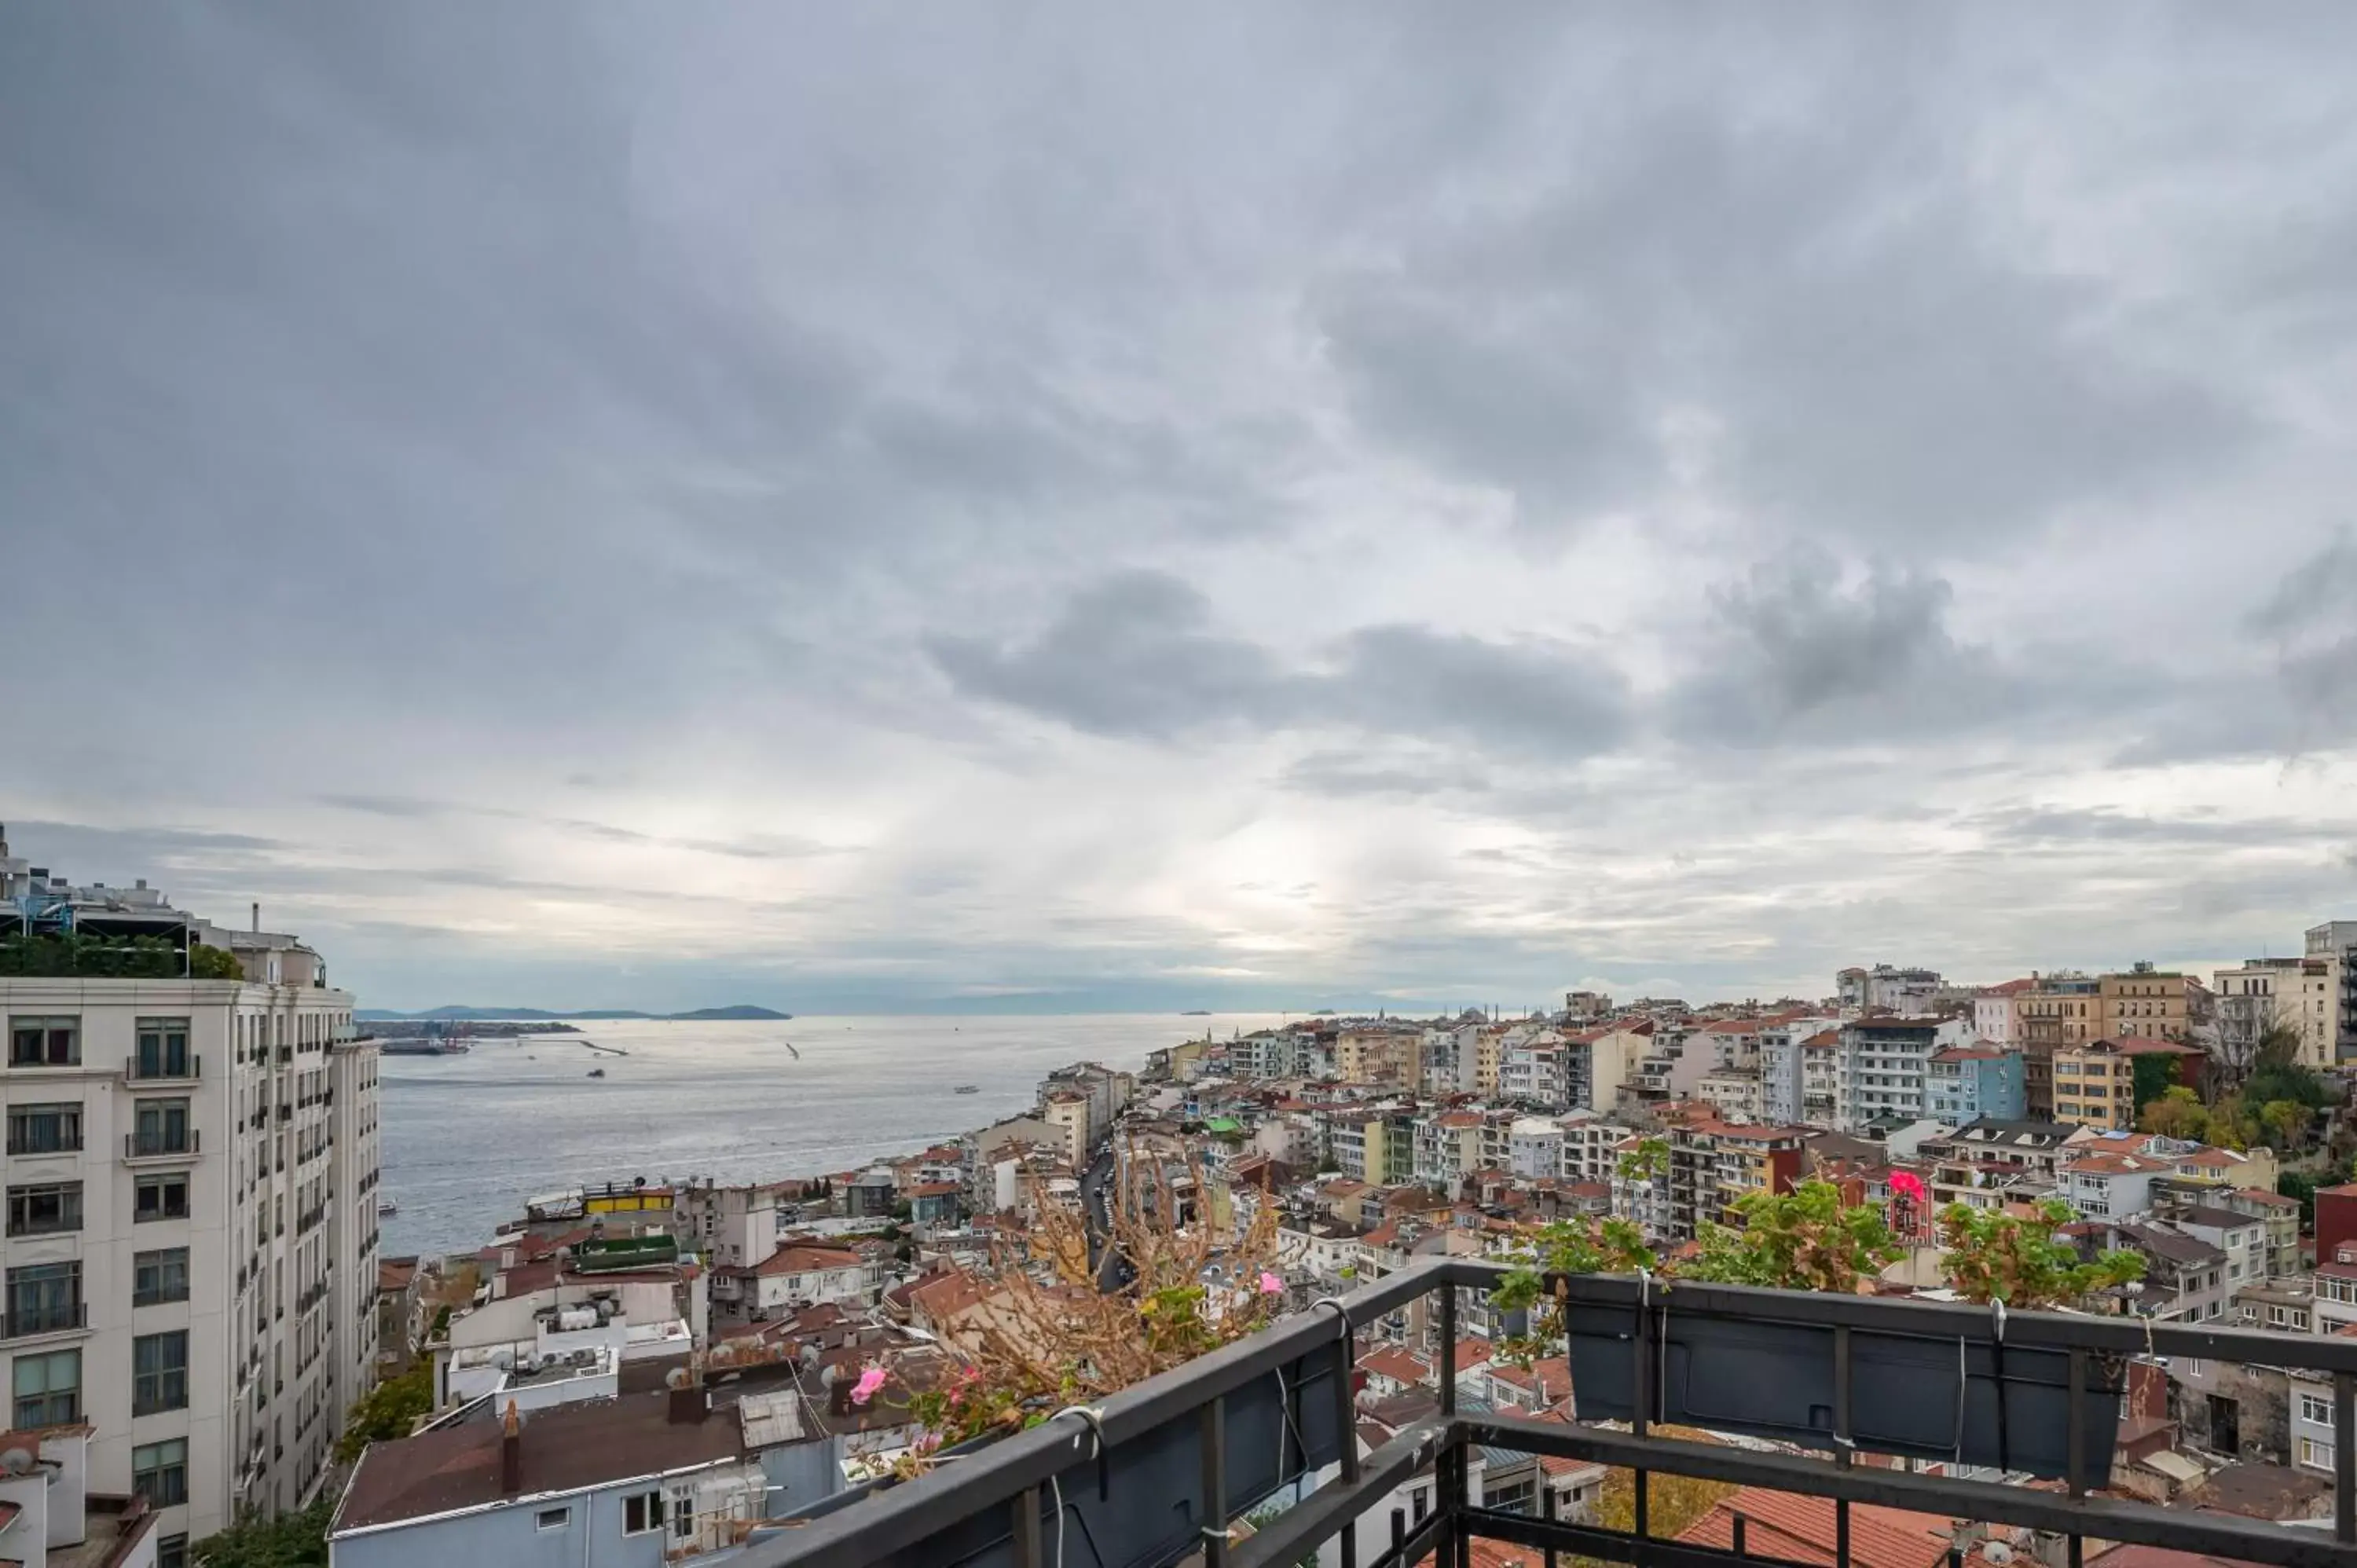 Sea view in Juno Hotel Taksim